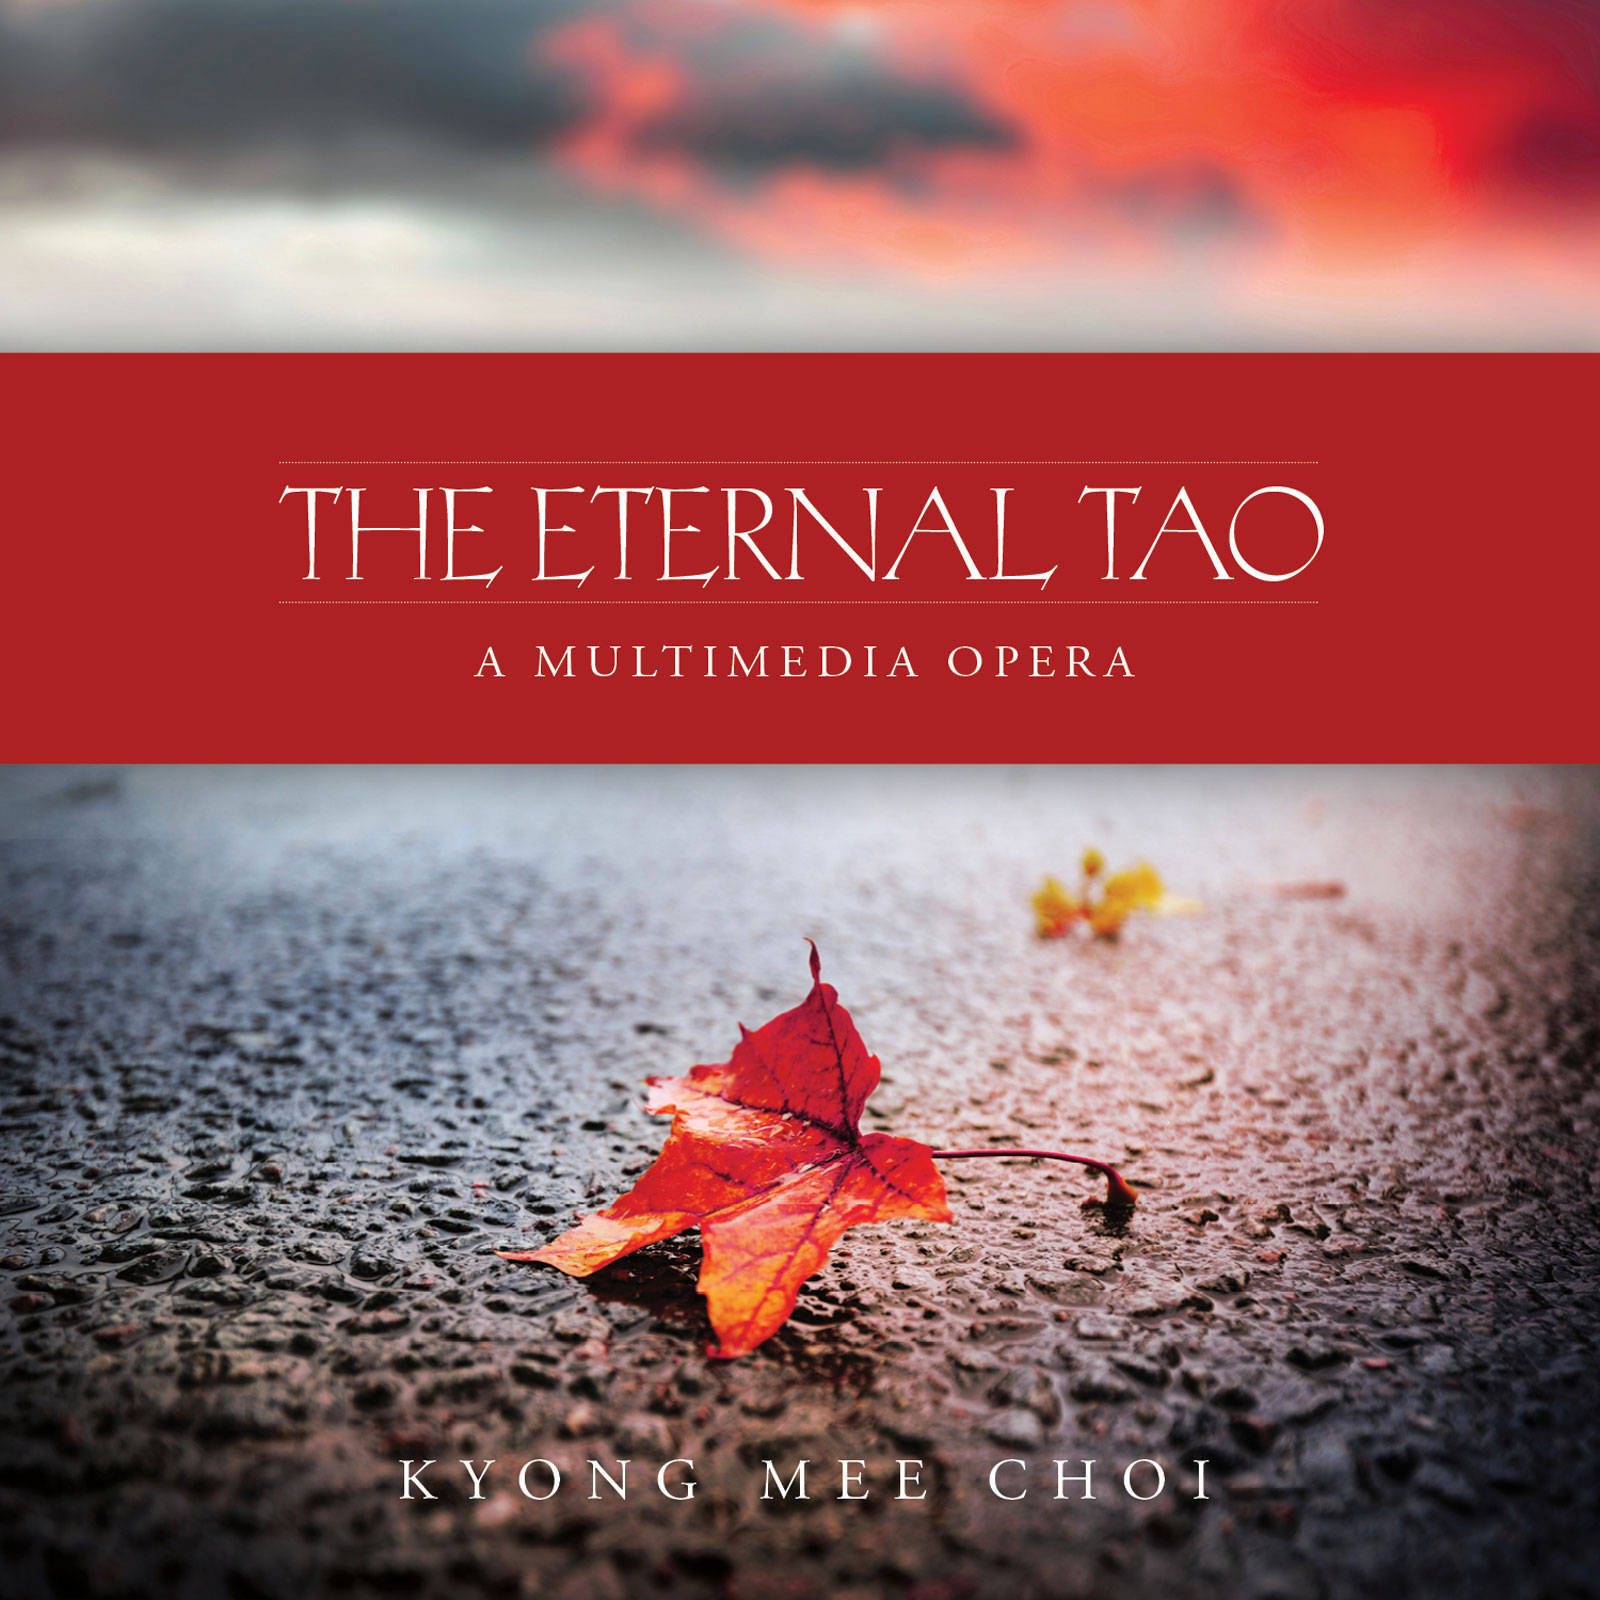 The Eternal Tao